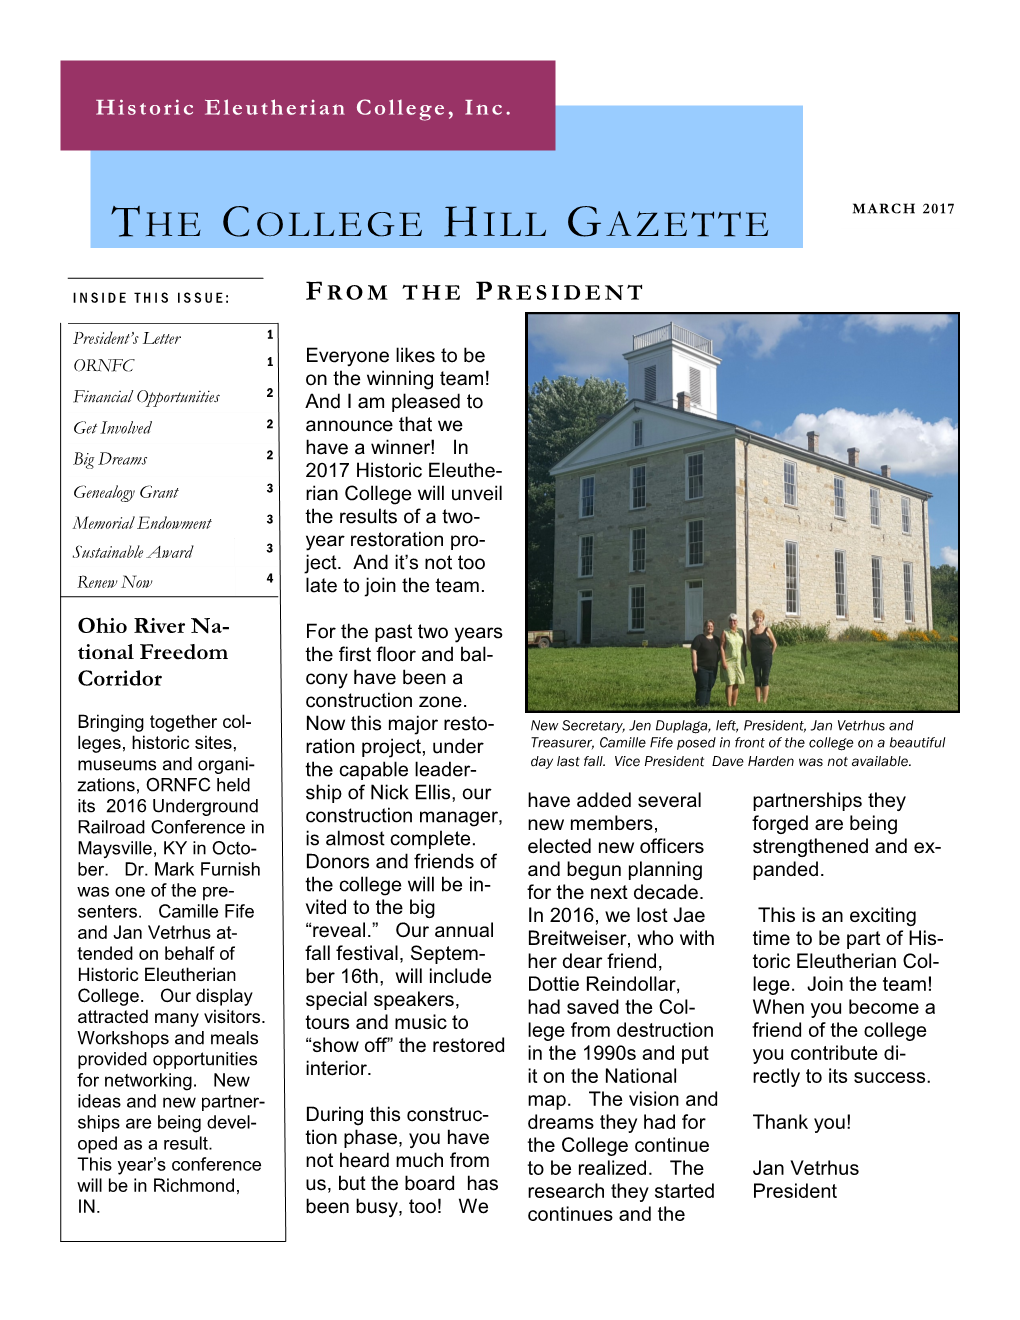 The College Hill Gazette March 2017